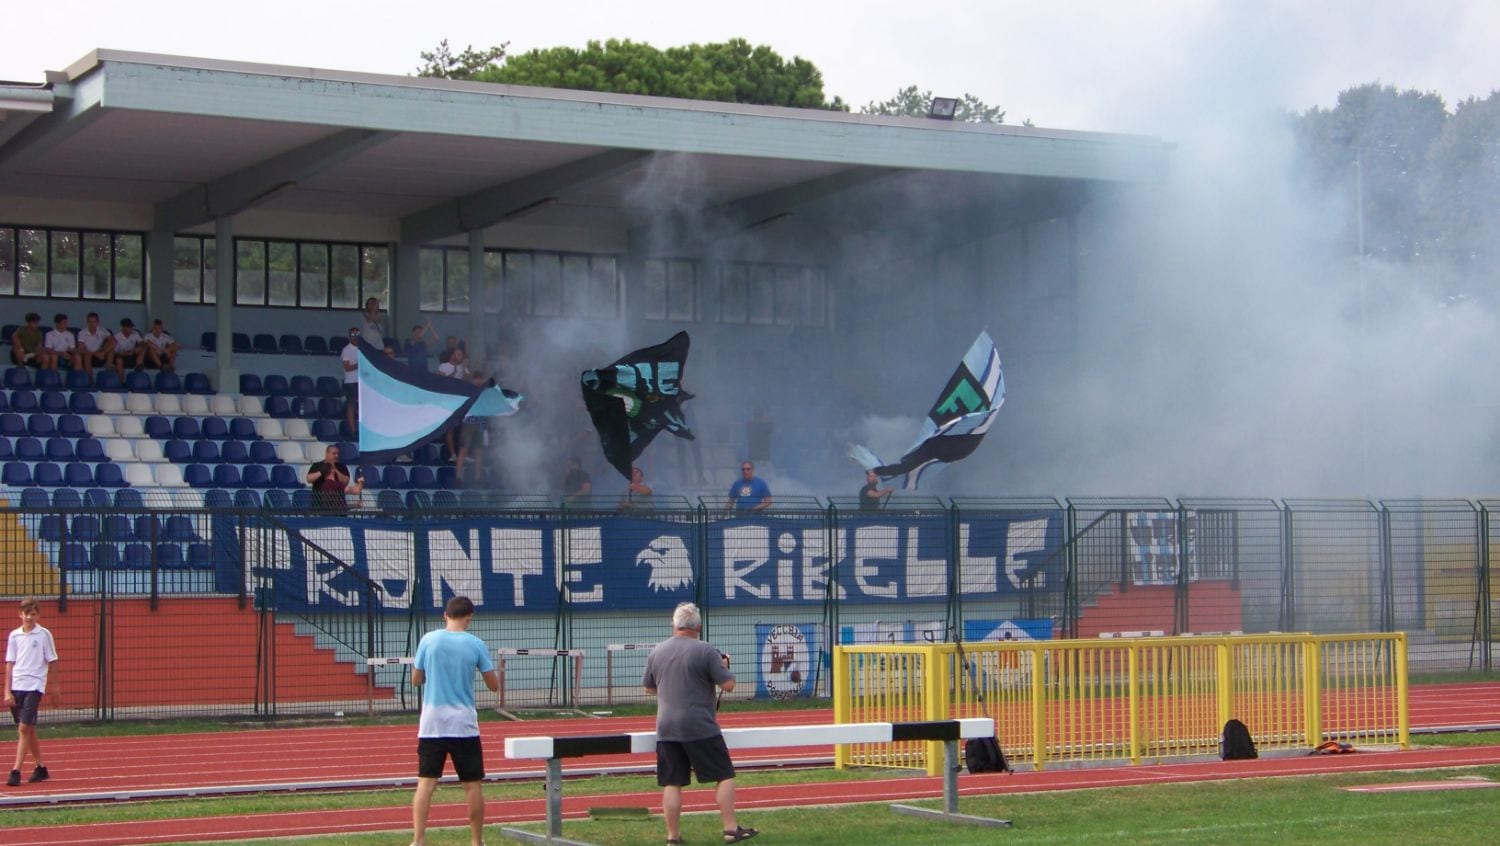 Calcio Fbc Saronno: allo stadio la festa del Fronte ribelle